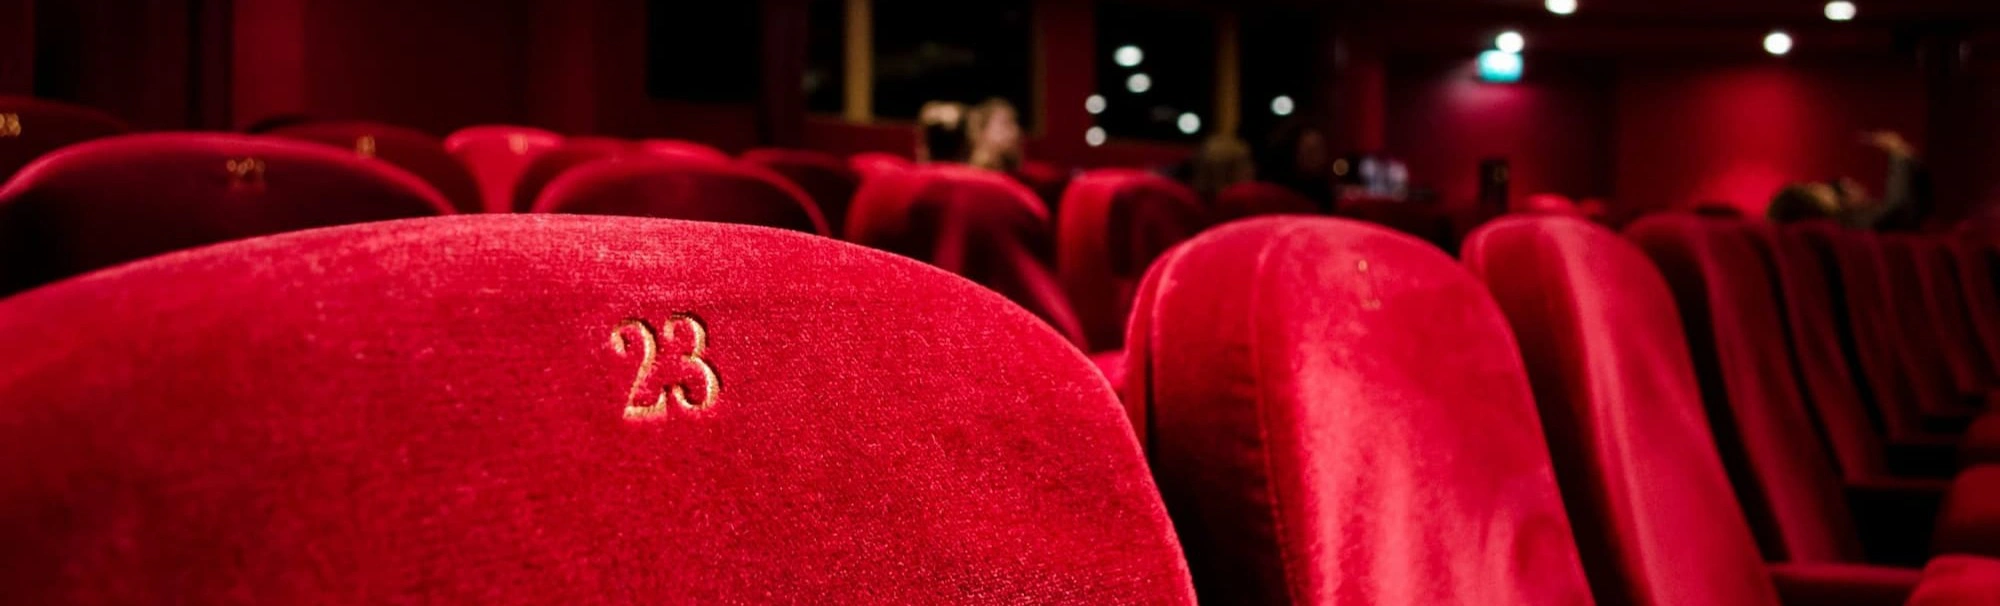 Успейте окунуться в романтику Парижа с опереттой "Канкан" в Театре Музыкальной Комедии! Купите билеты сейчас и станьте частью этой незабываемой истории!